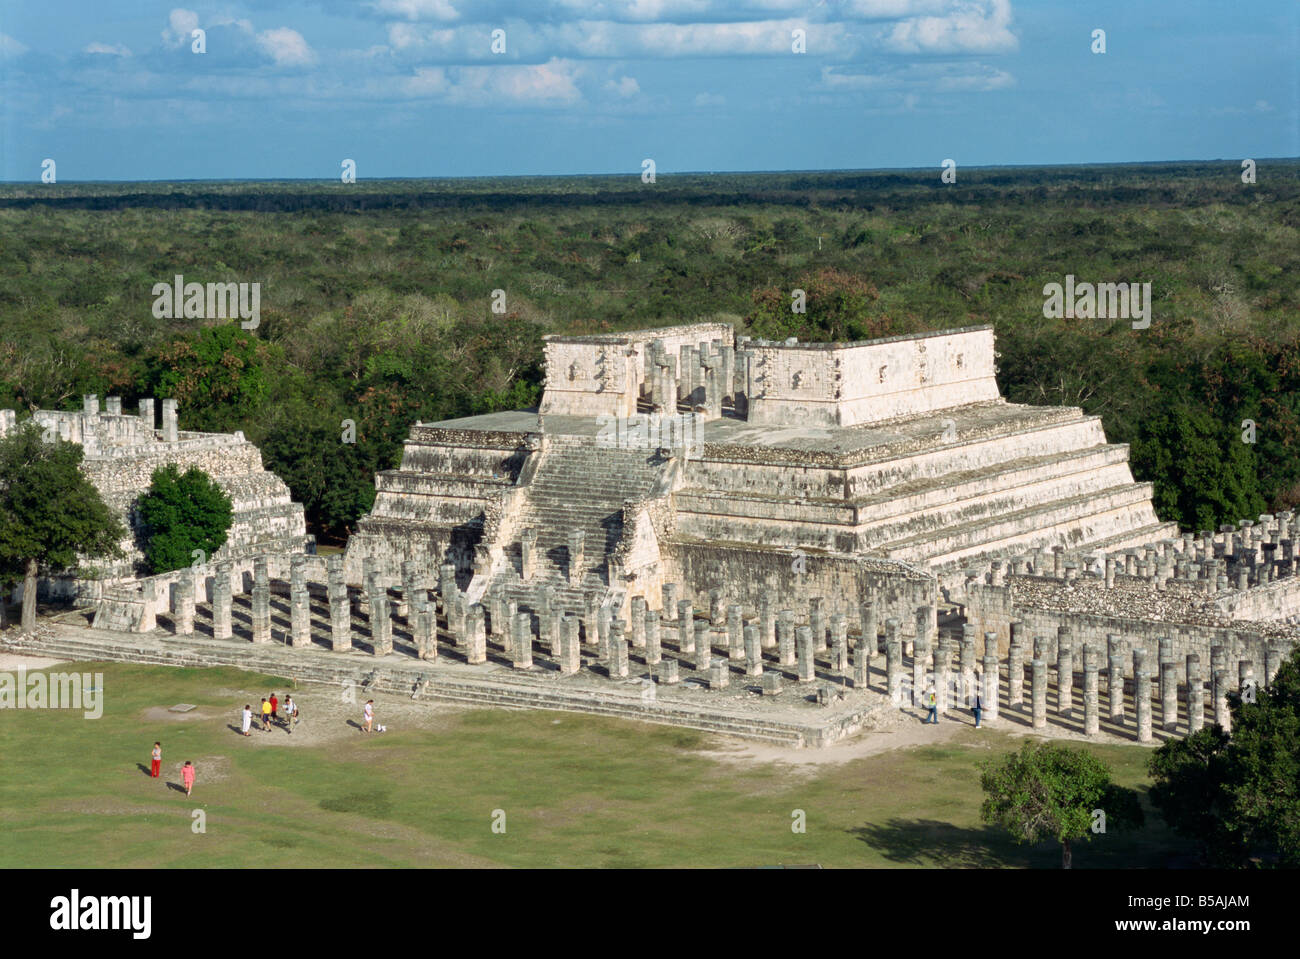 Temple of the Warriors, Chichen Itza, UNESCO World Heritage Site, Yucatan, Mexico, North America Stock Photo